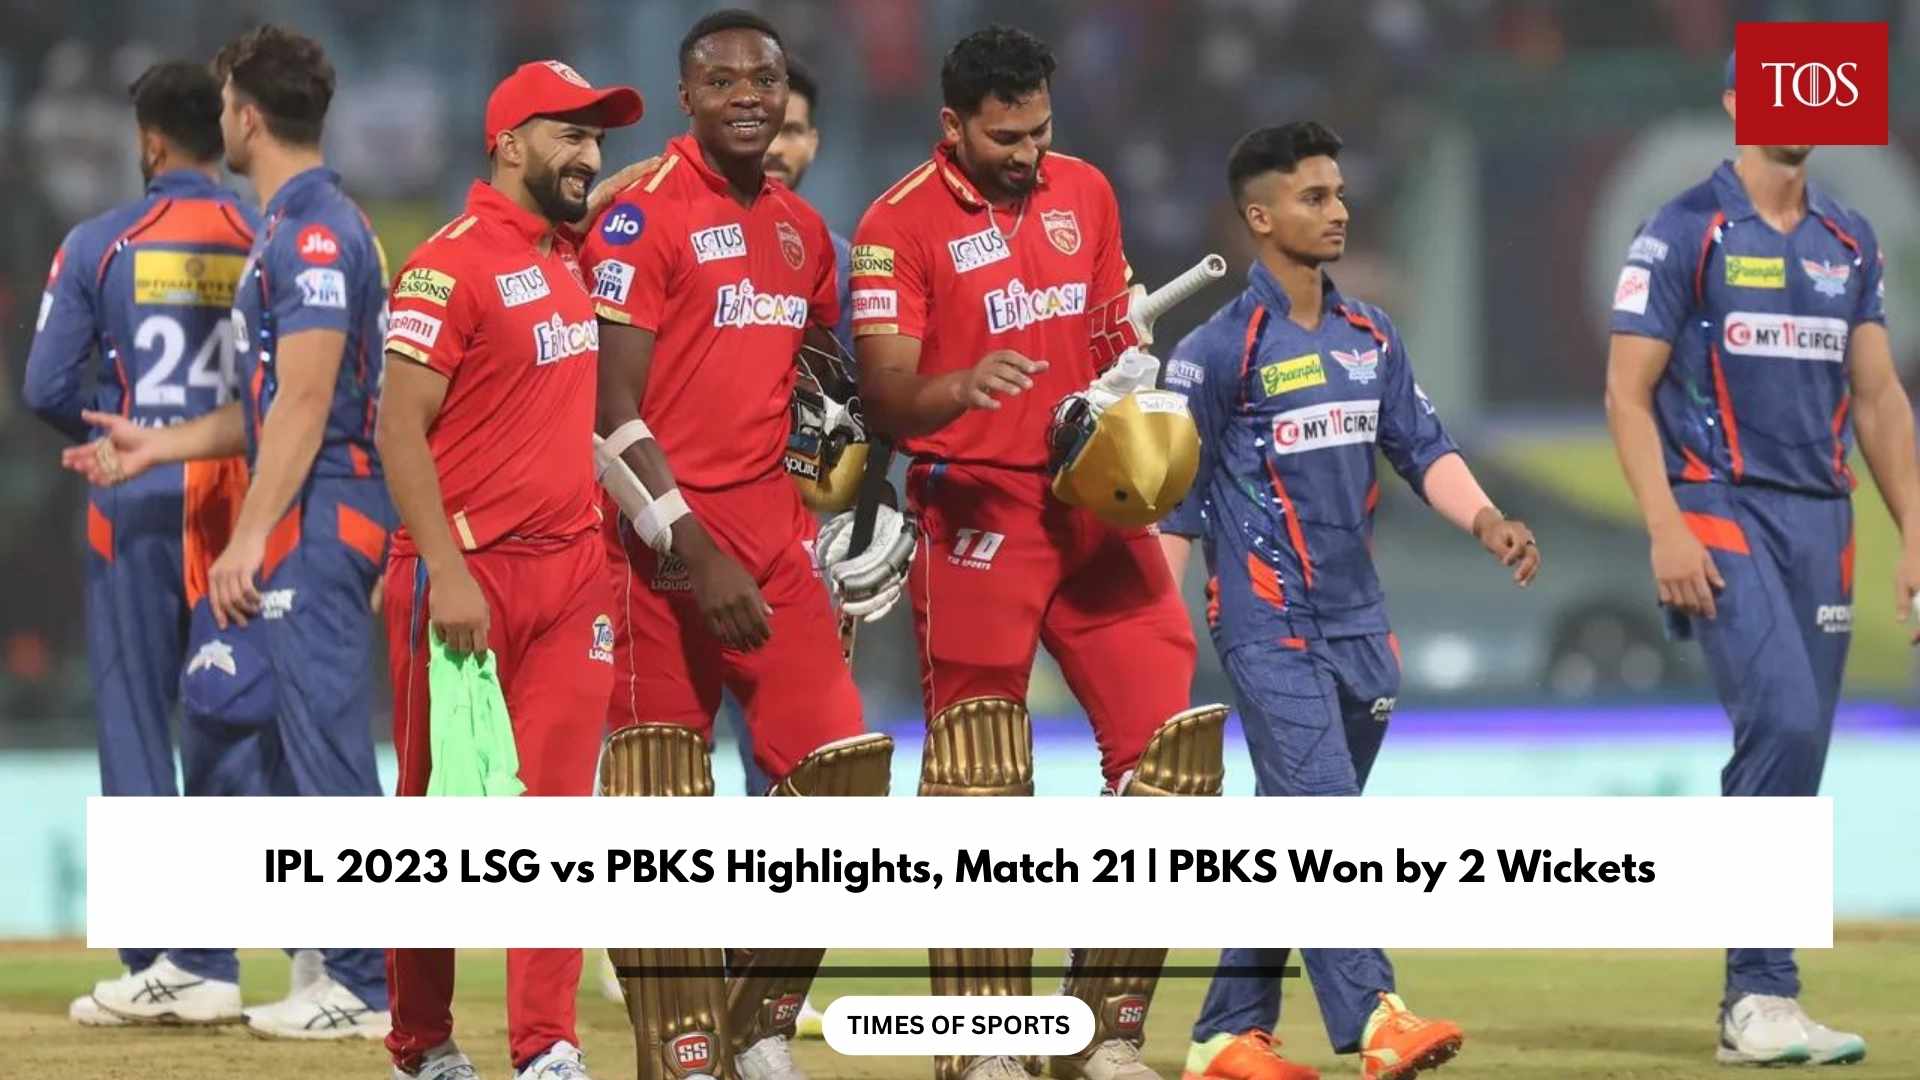 IPL 2023 LSG vs PBKS Highlights